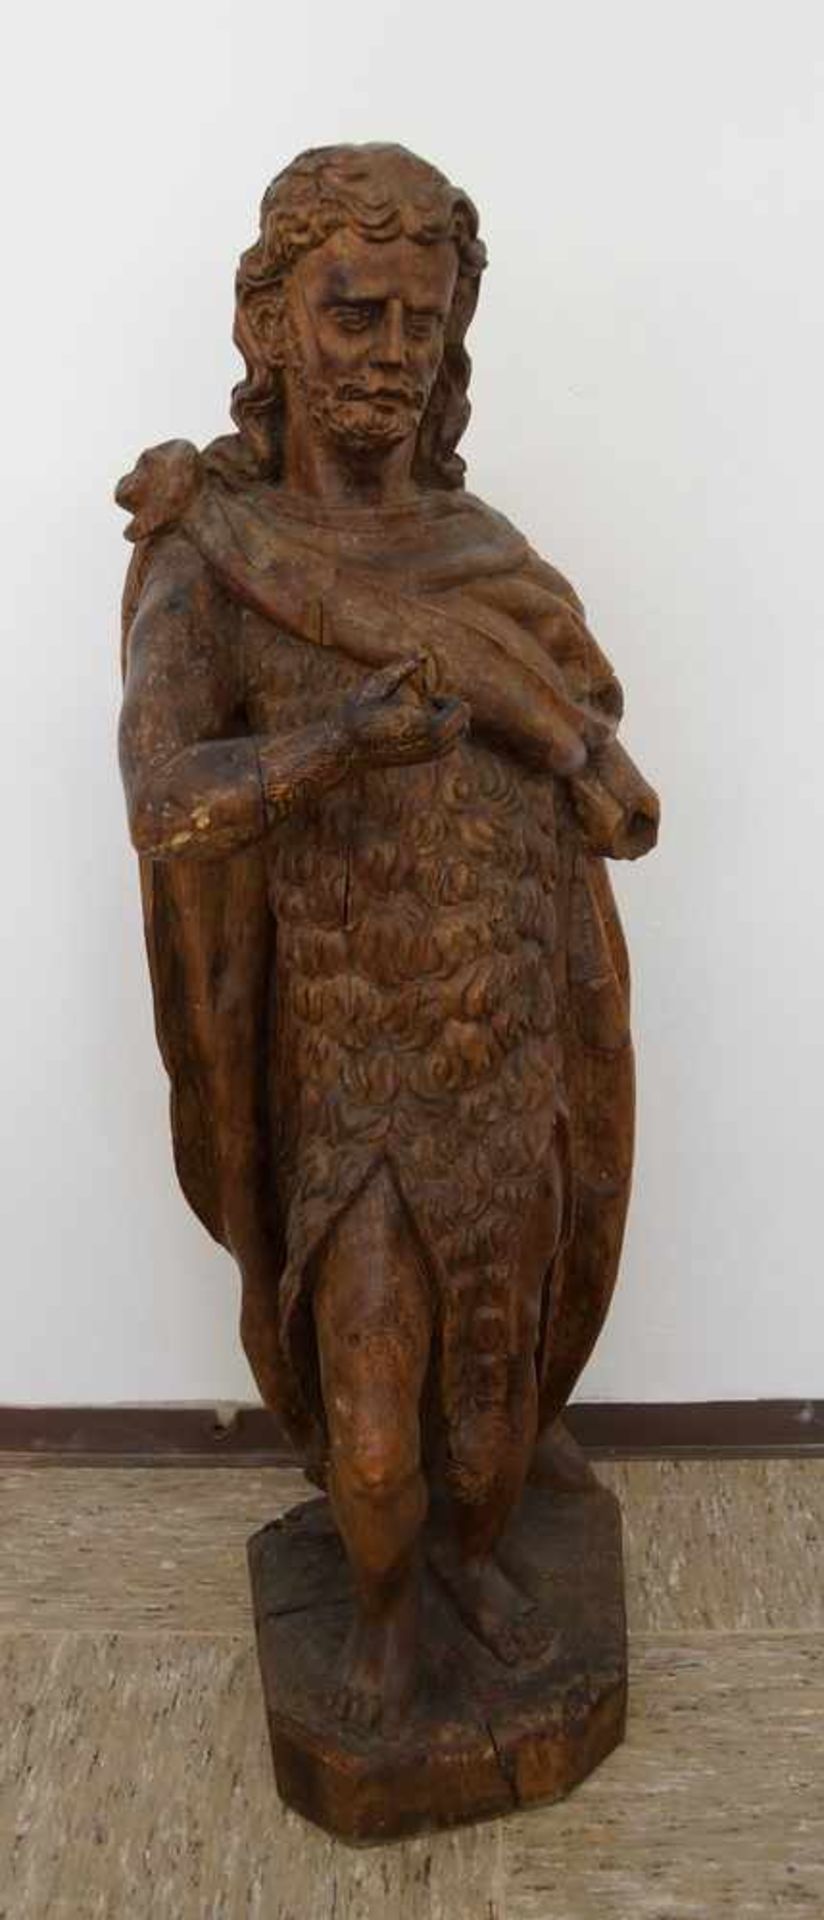 Grosse, in Holz geschnitzte Skulptur des heiligen Johannes, H 105cm- - -24.00 % buyer's premium on